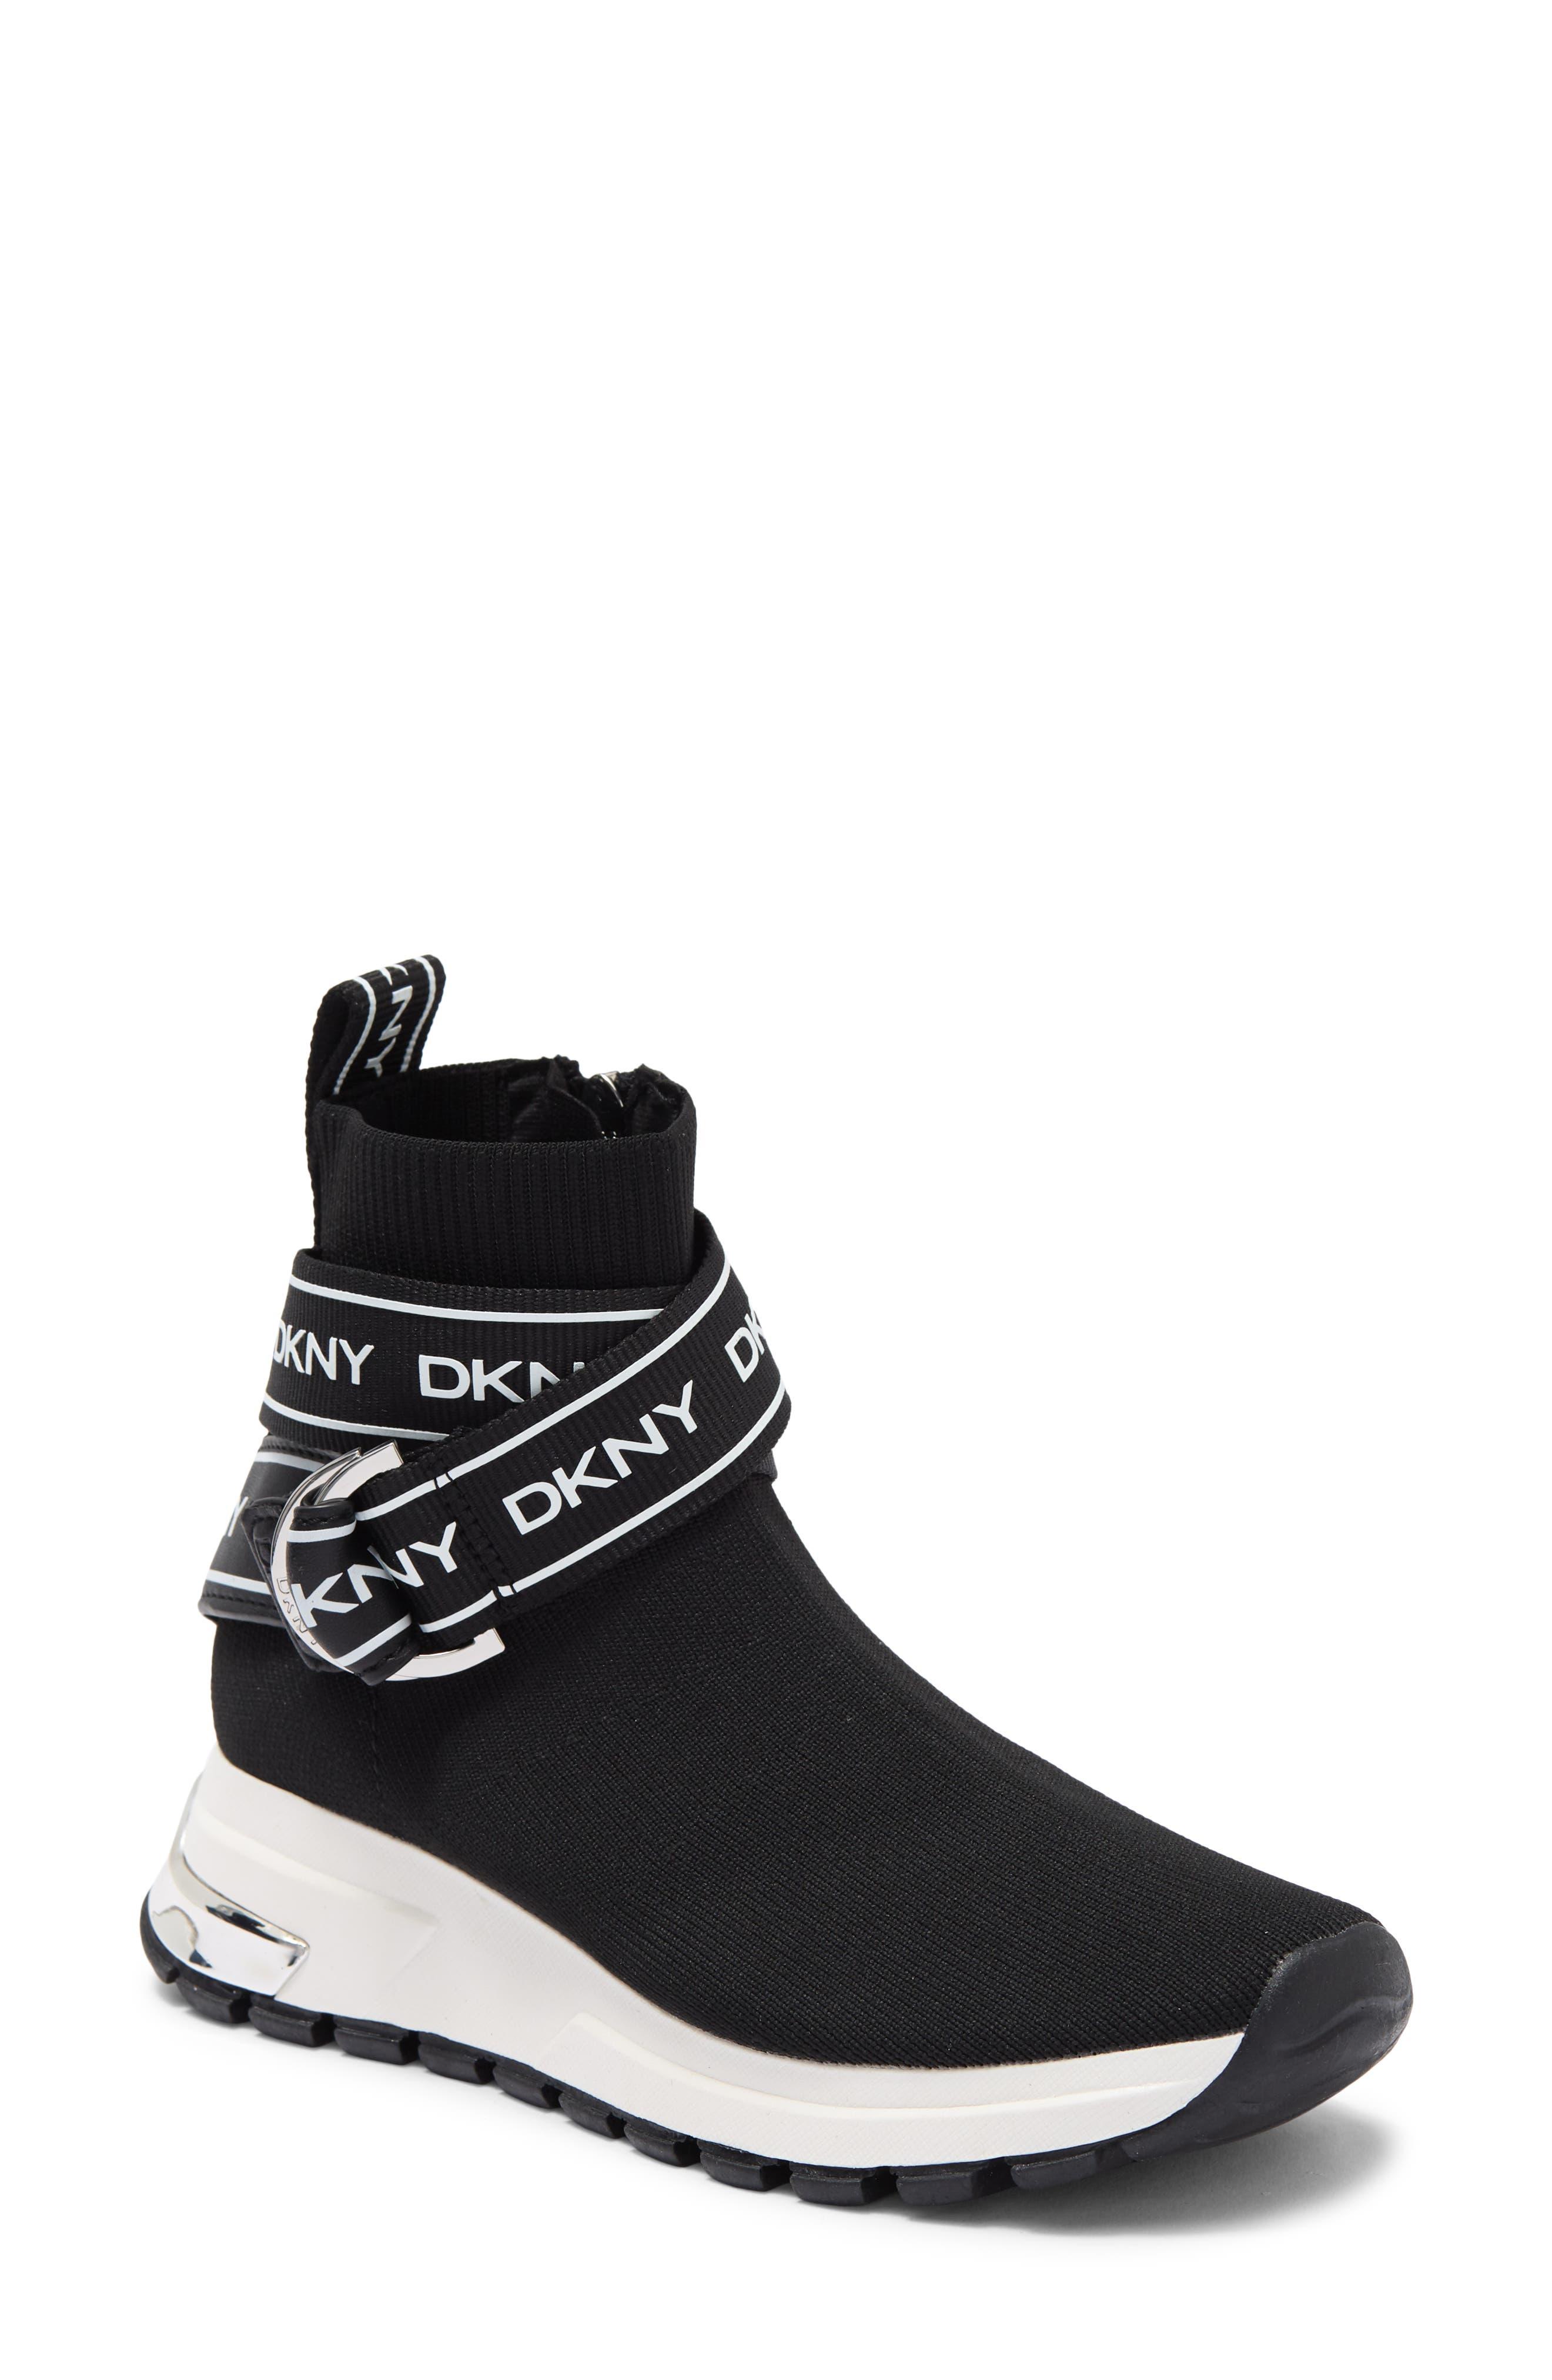 DKNY Miley Sock Hi Top Sneaker In Black/whit At Nordstrom Rack | Lyst